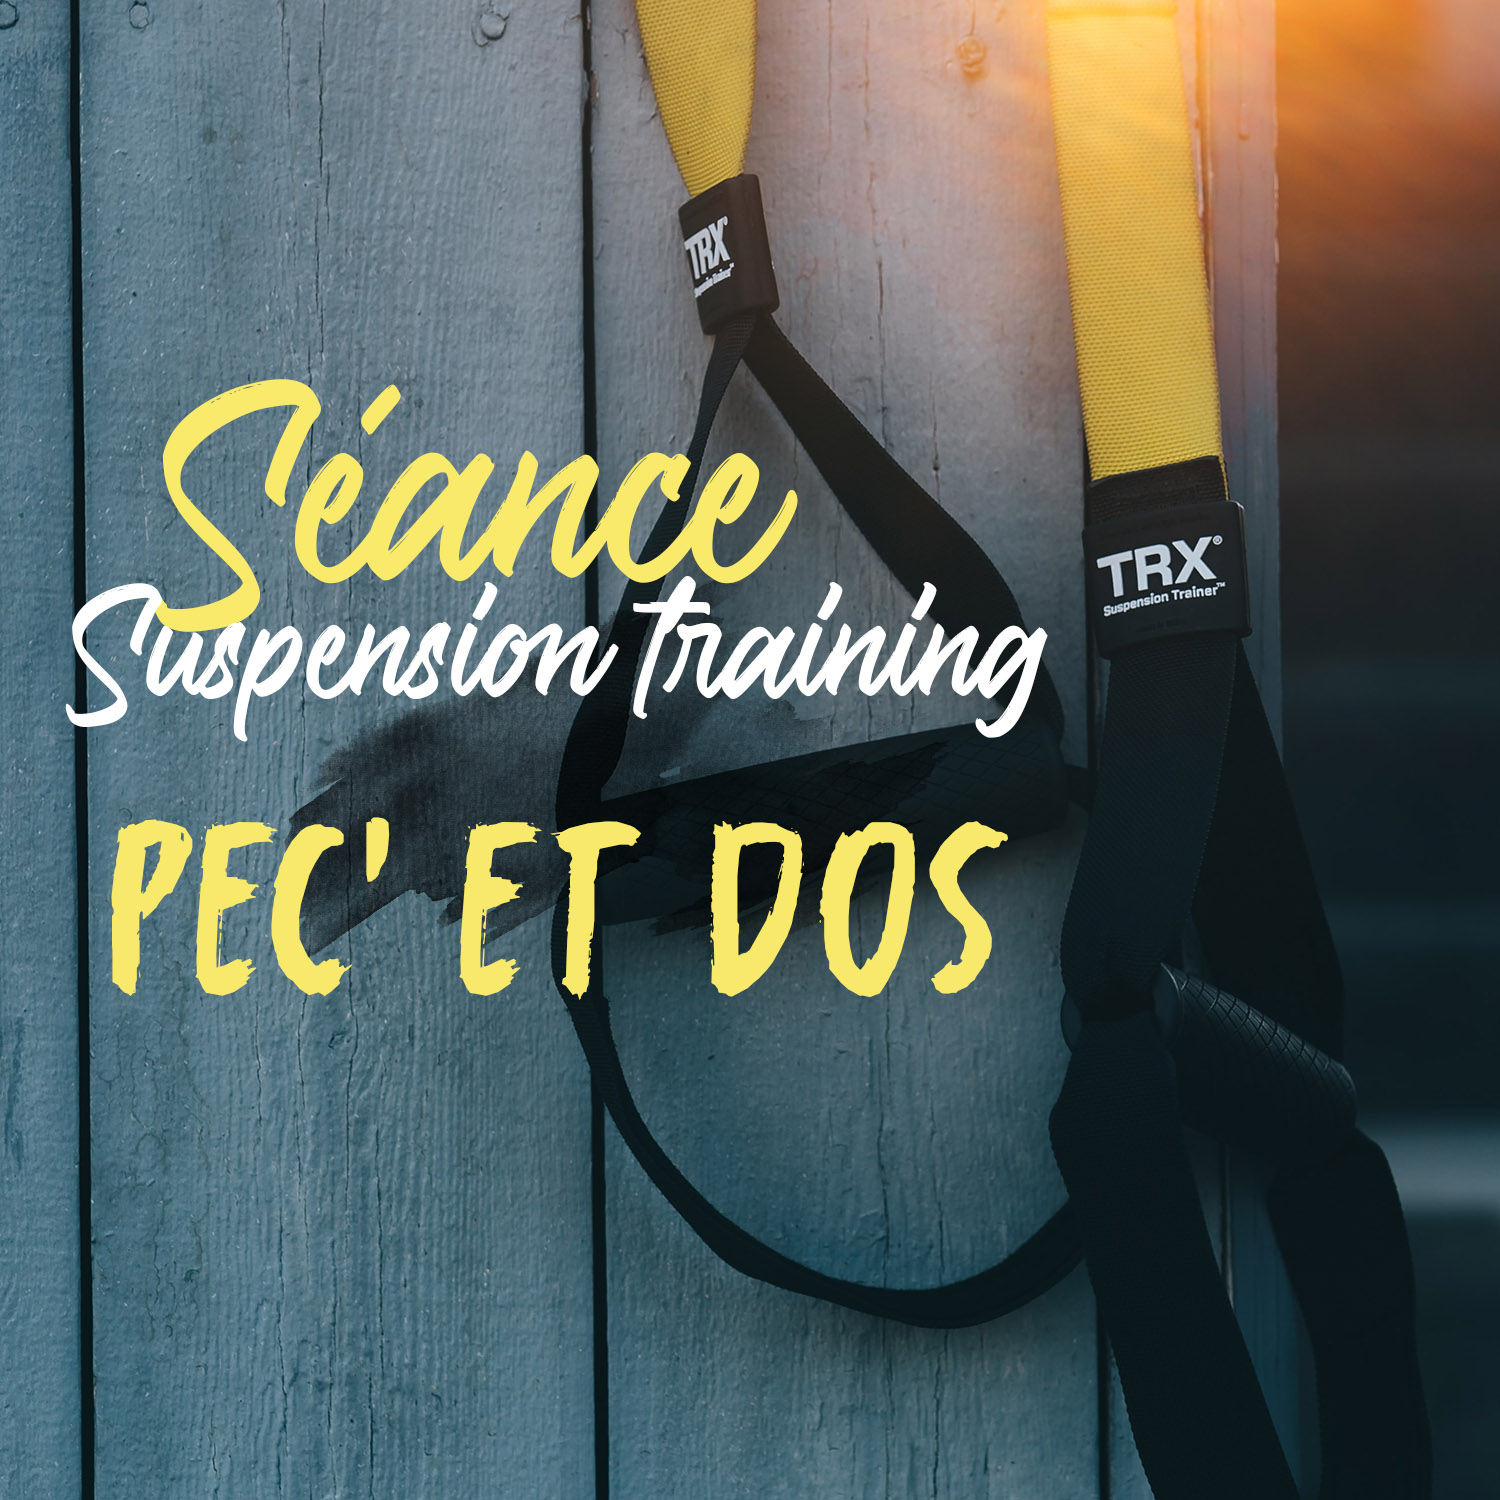 Séance suspension training (TRX) – pec’ et dos